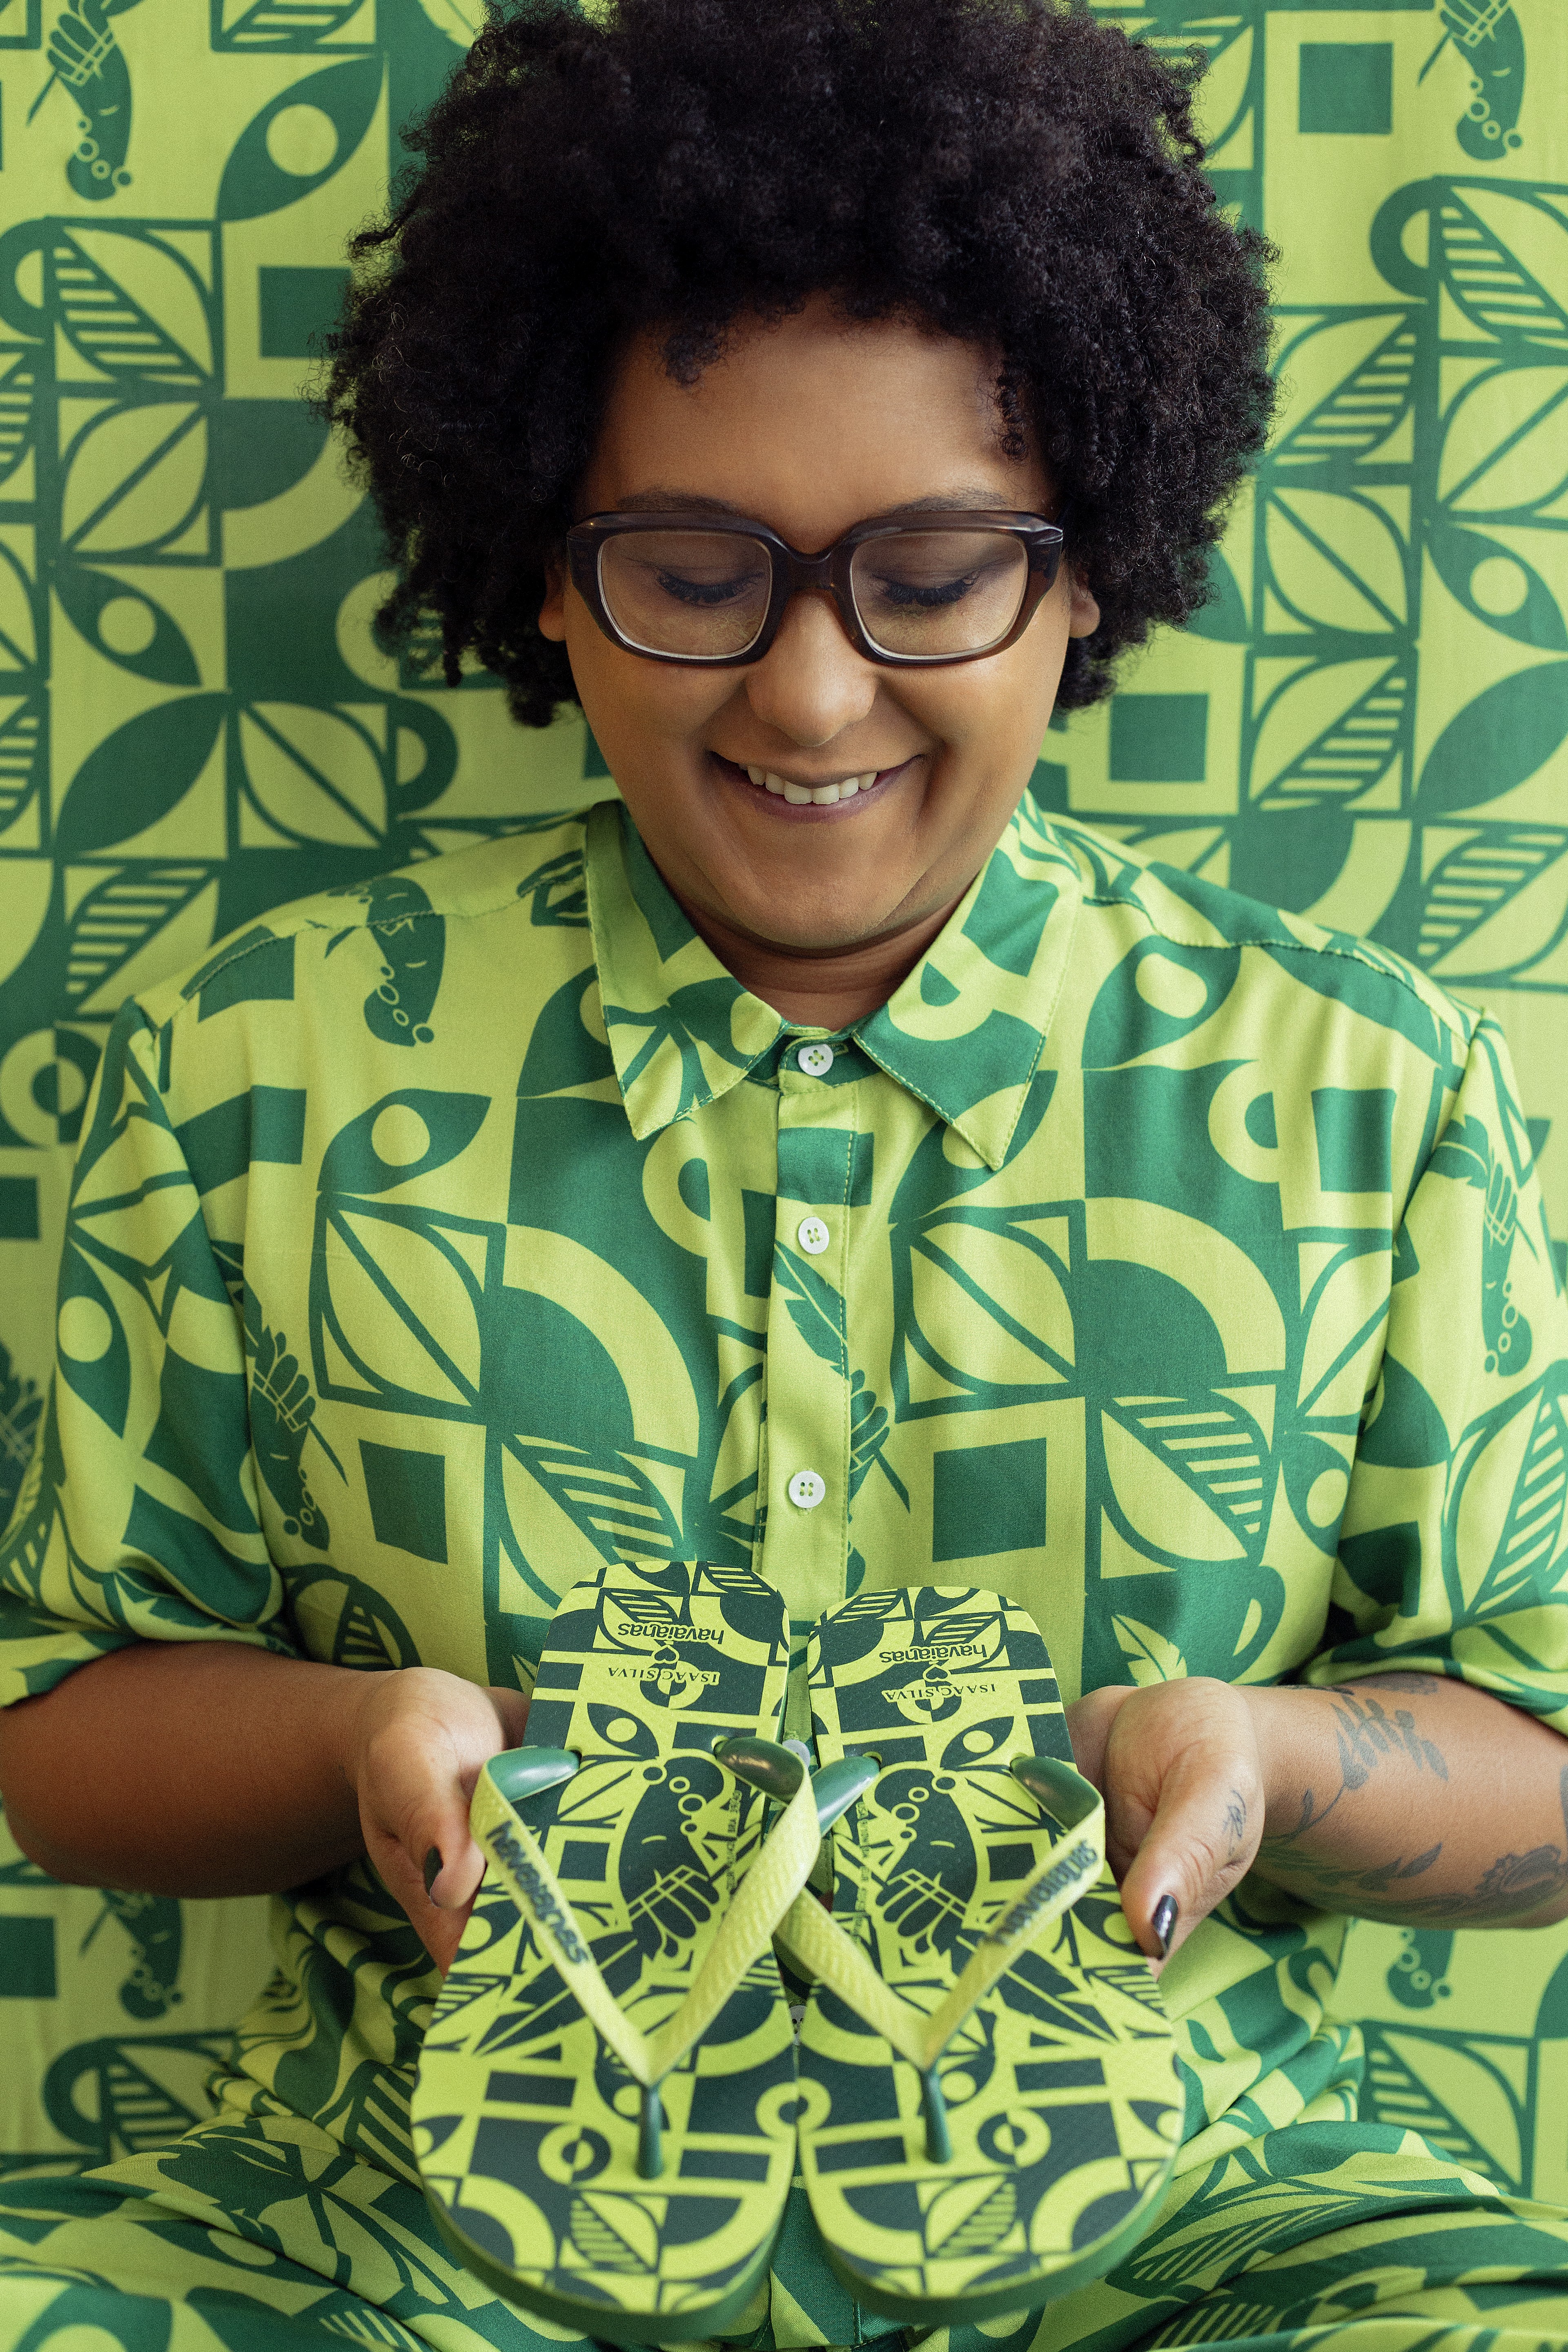 O estilista baiano Isaac Silva criou três modelos exclusivos com inspiração afroindígena em collab com a Havaianas (Foto: Divulgação/Havainas)